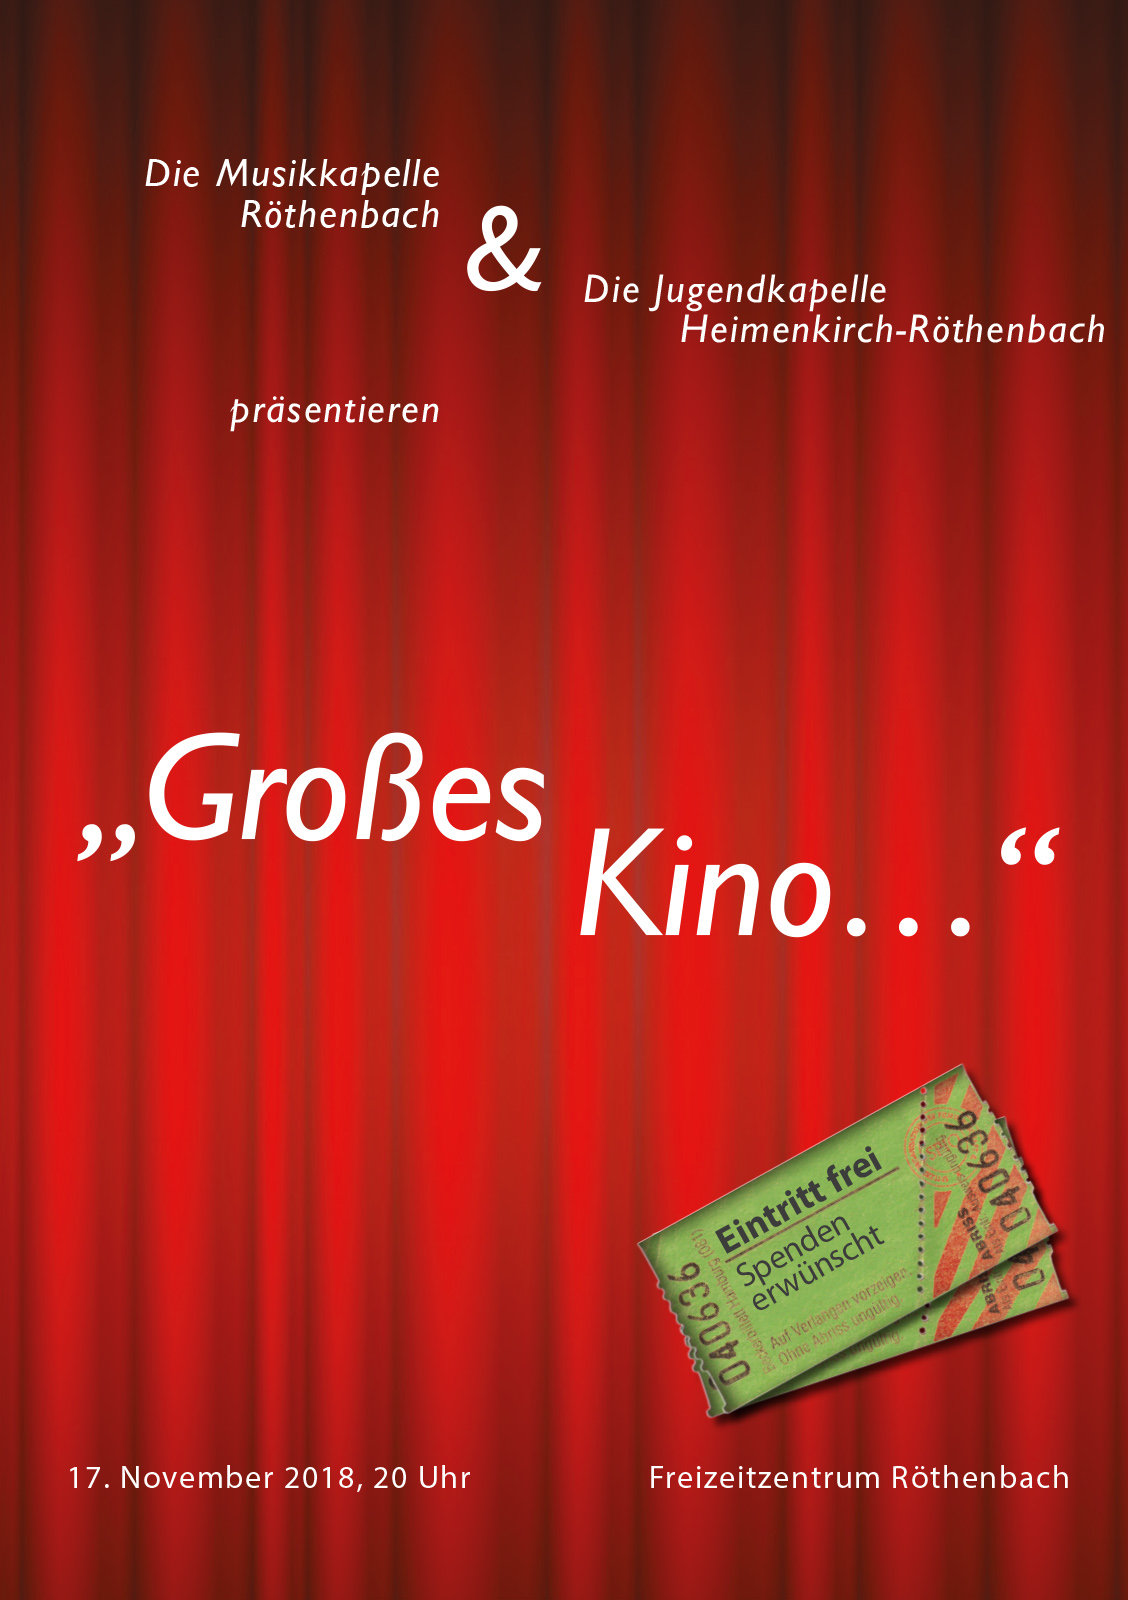 Jahreskonzert der Musikkapelle Röthenbach 2018 unter dem Motto "Großes Kino…"